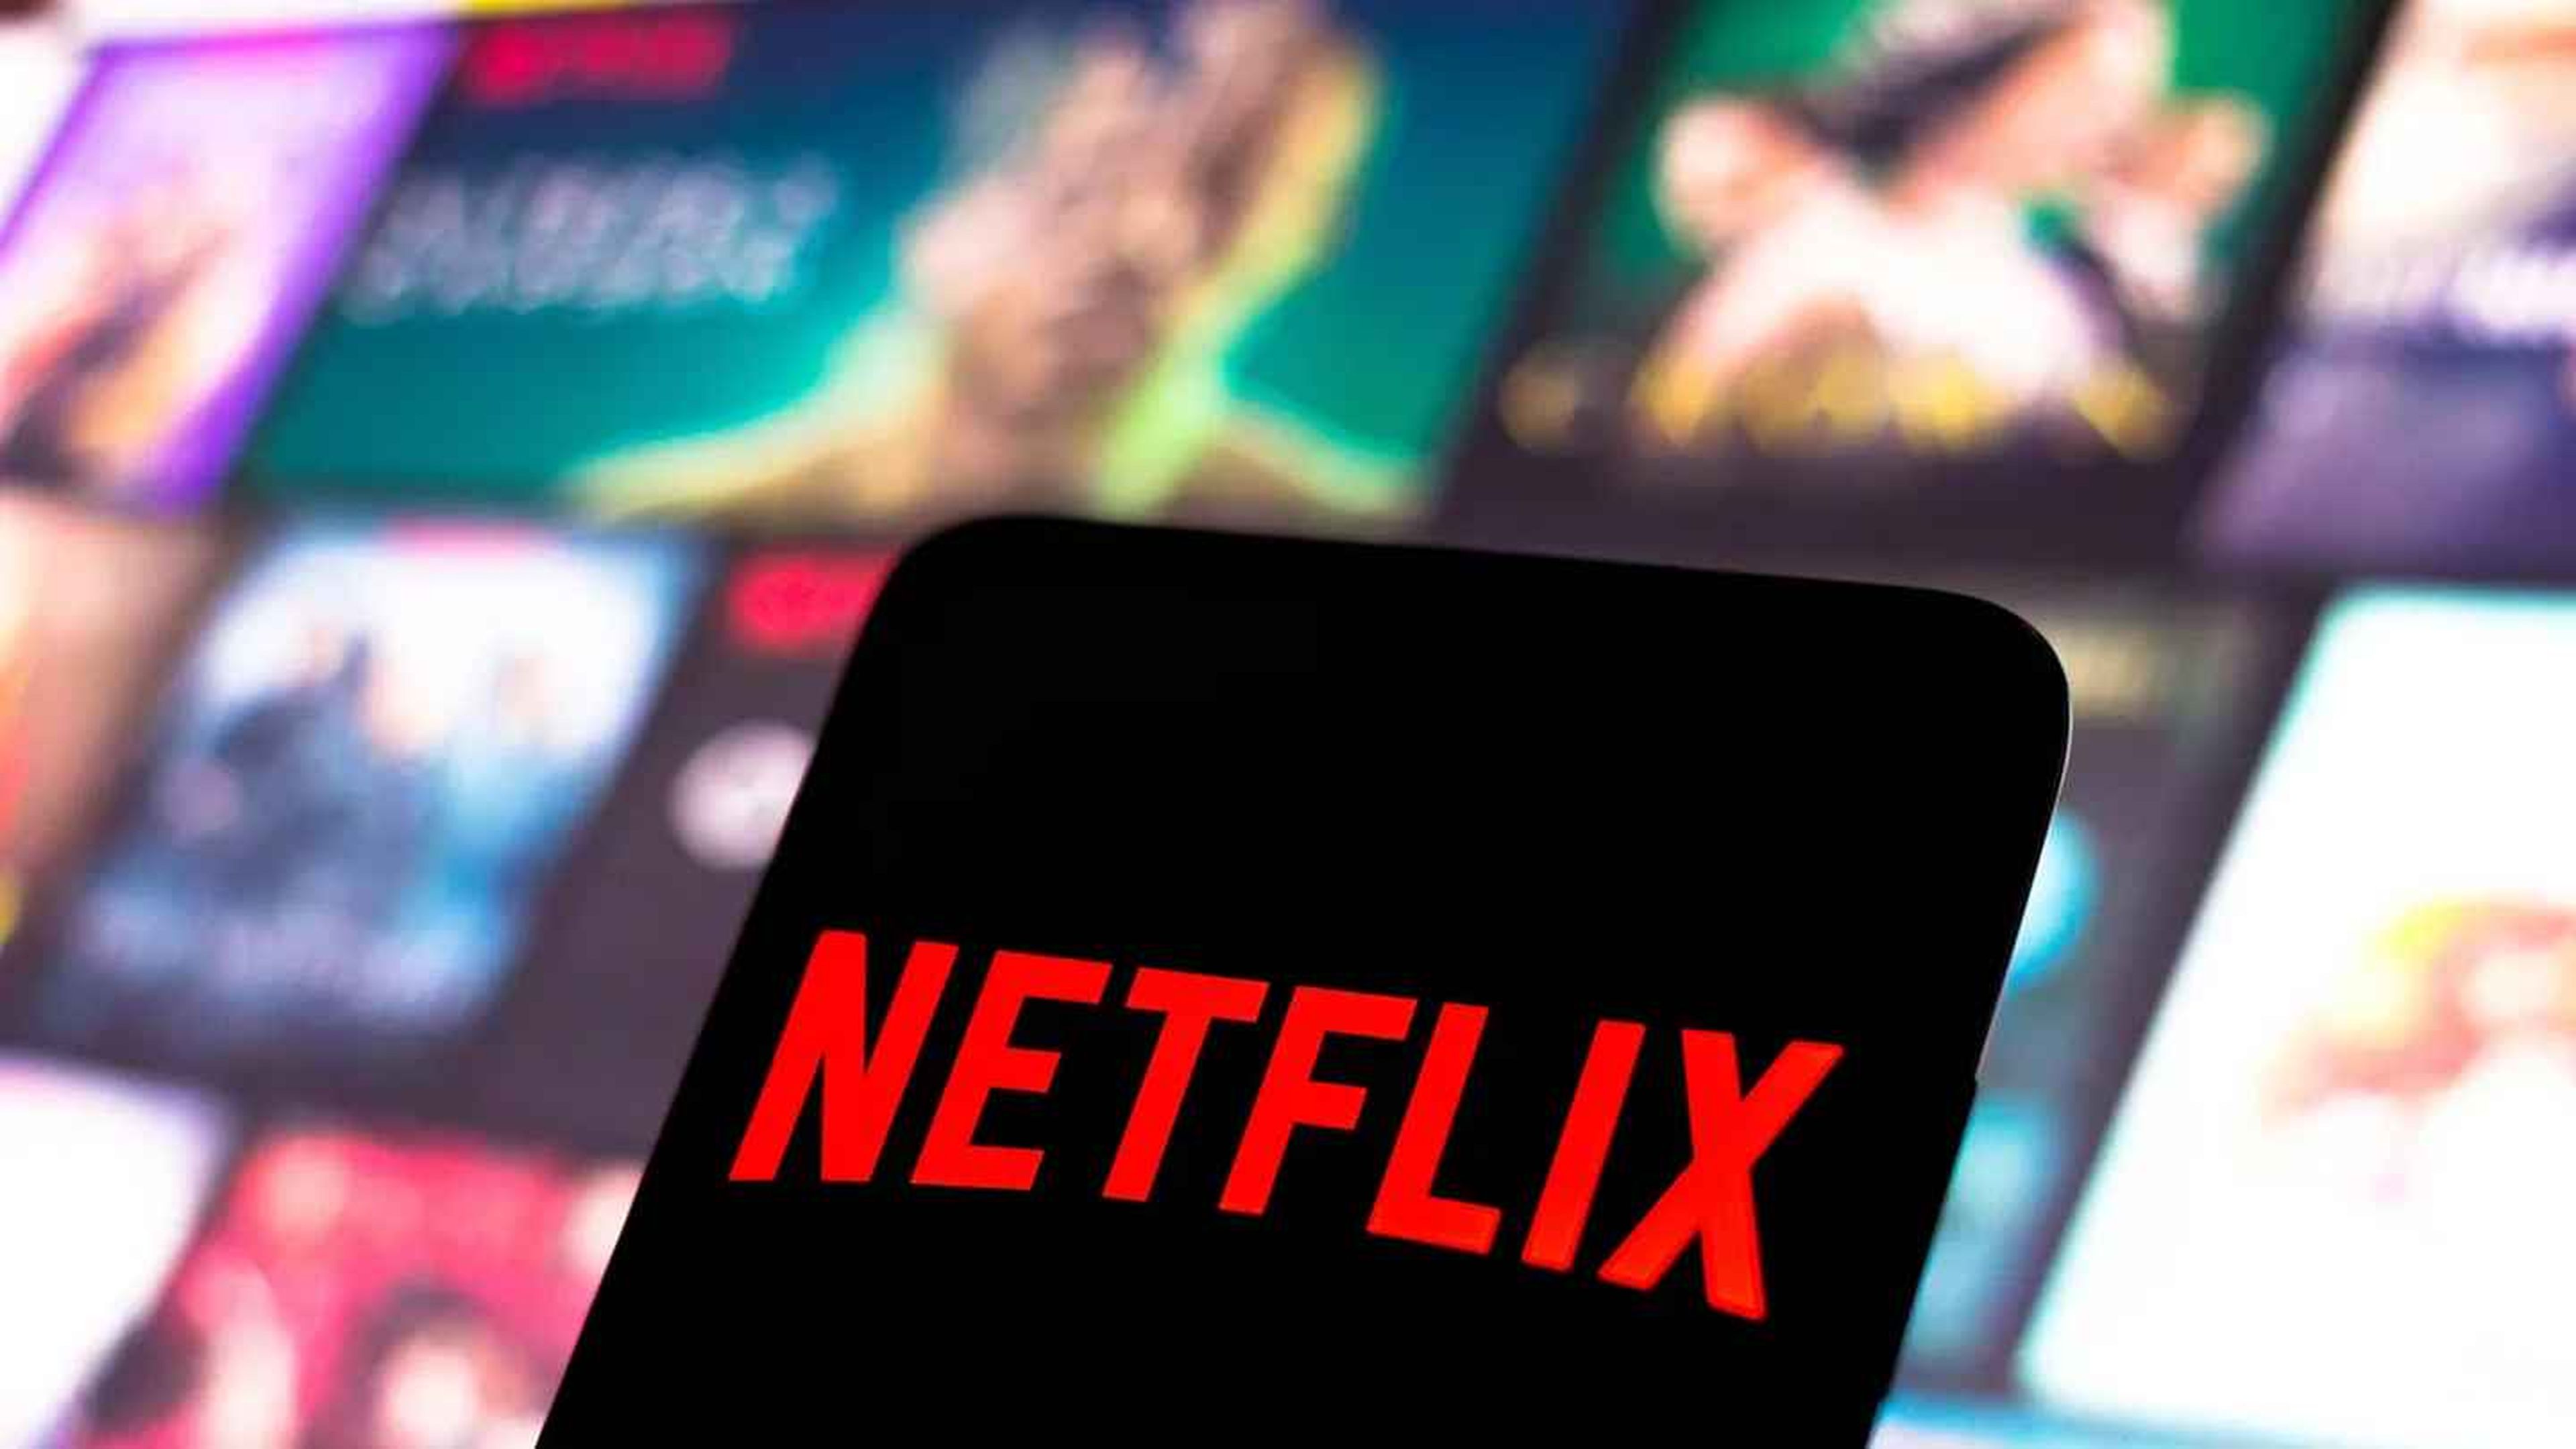 Cuánto cuesta al mes Netflix en Estados Unidos? Revisa todos los planes